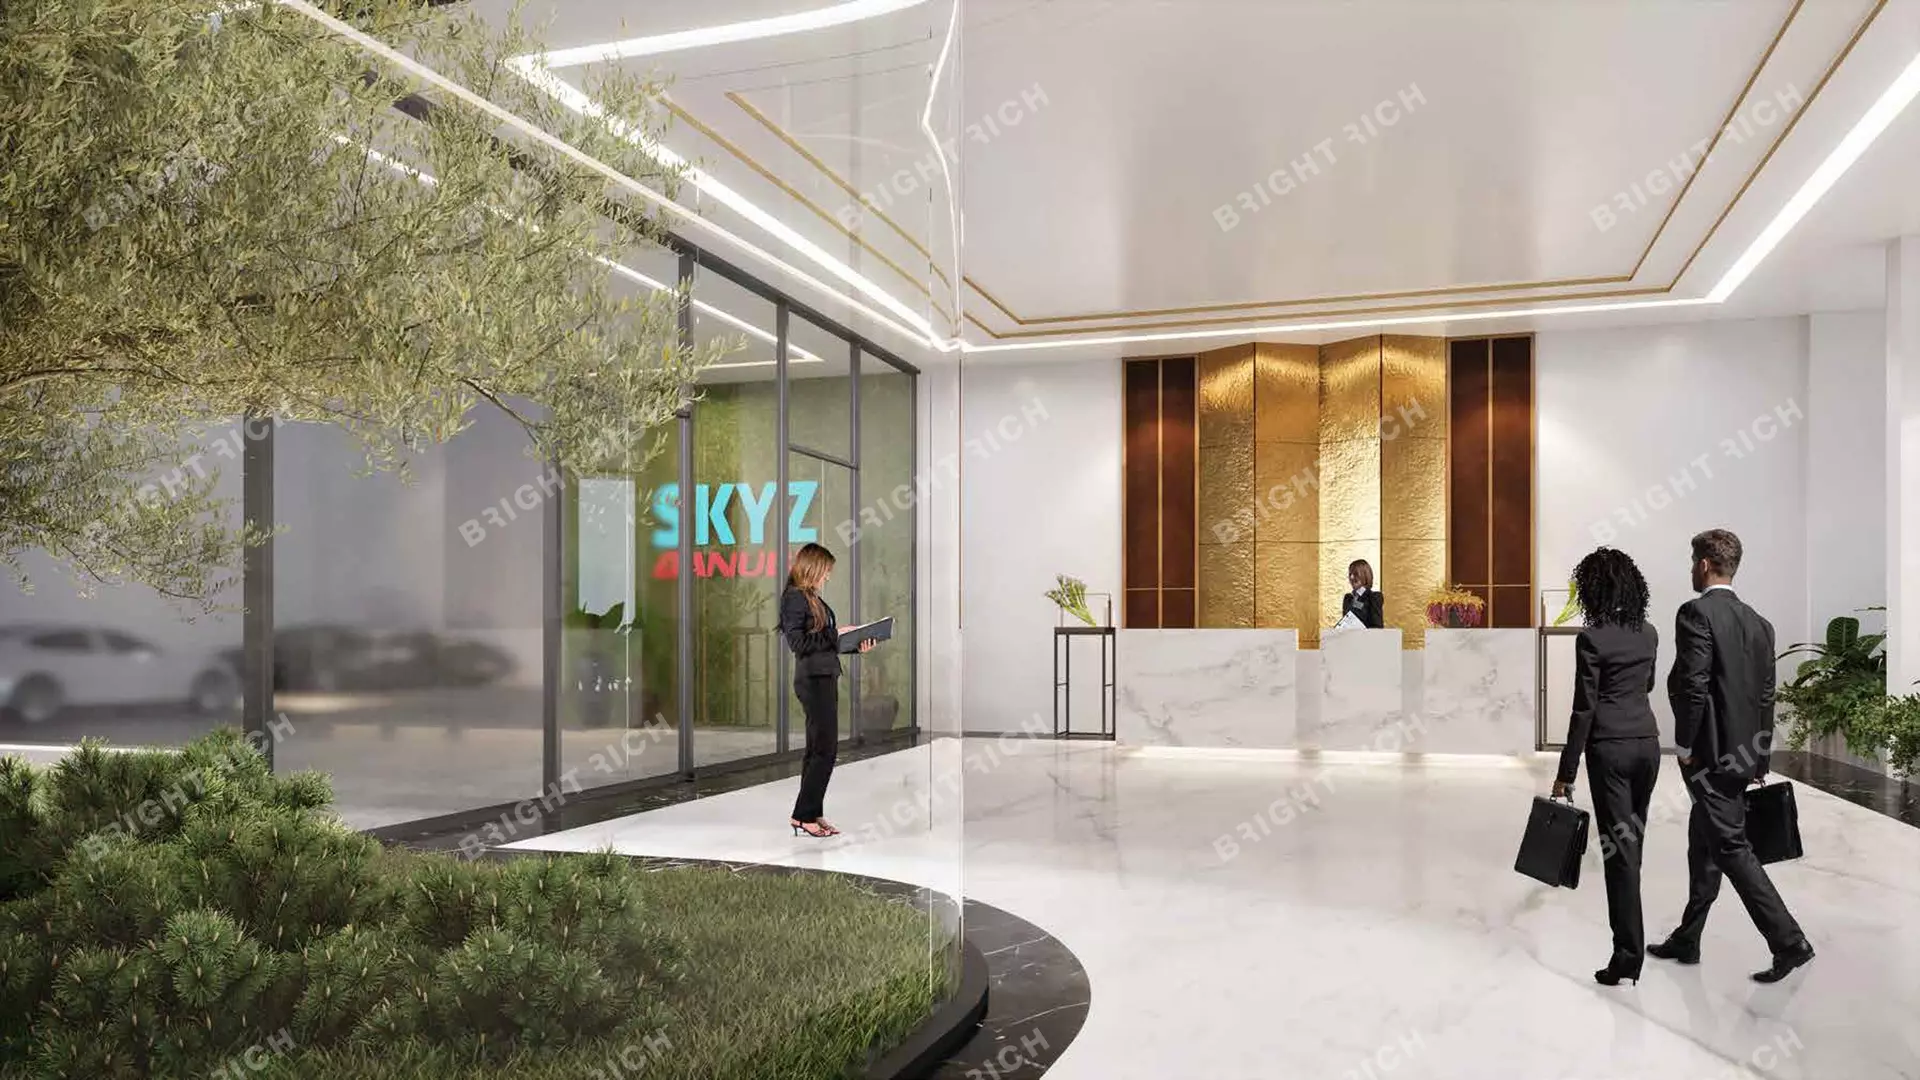 Skyz Residence, apart complex in Dubai - 3